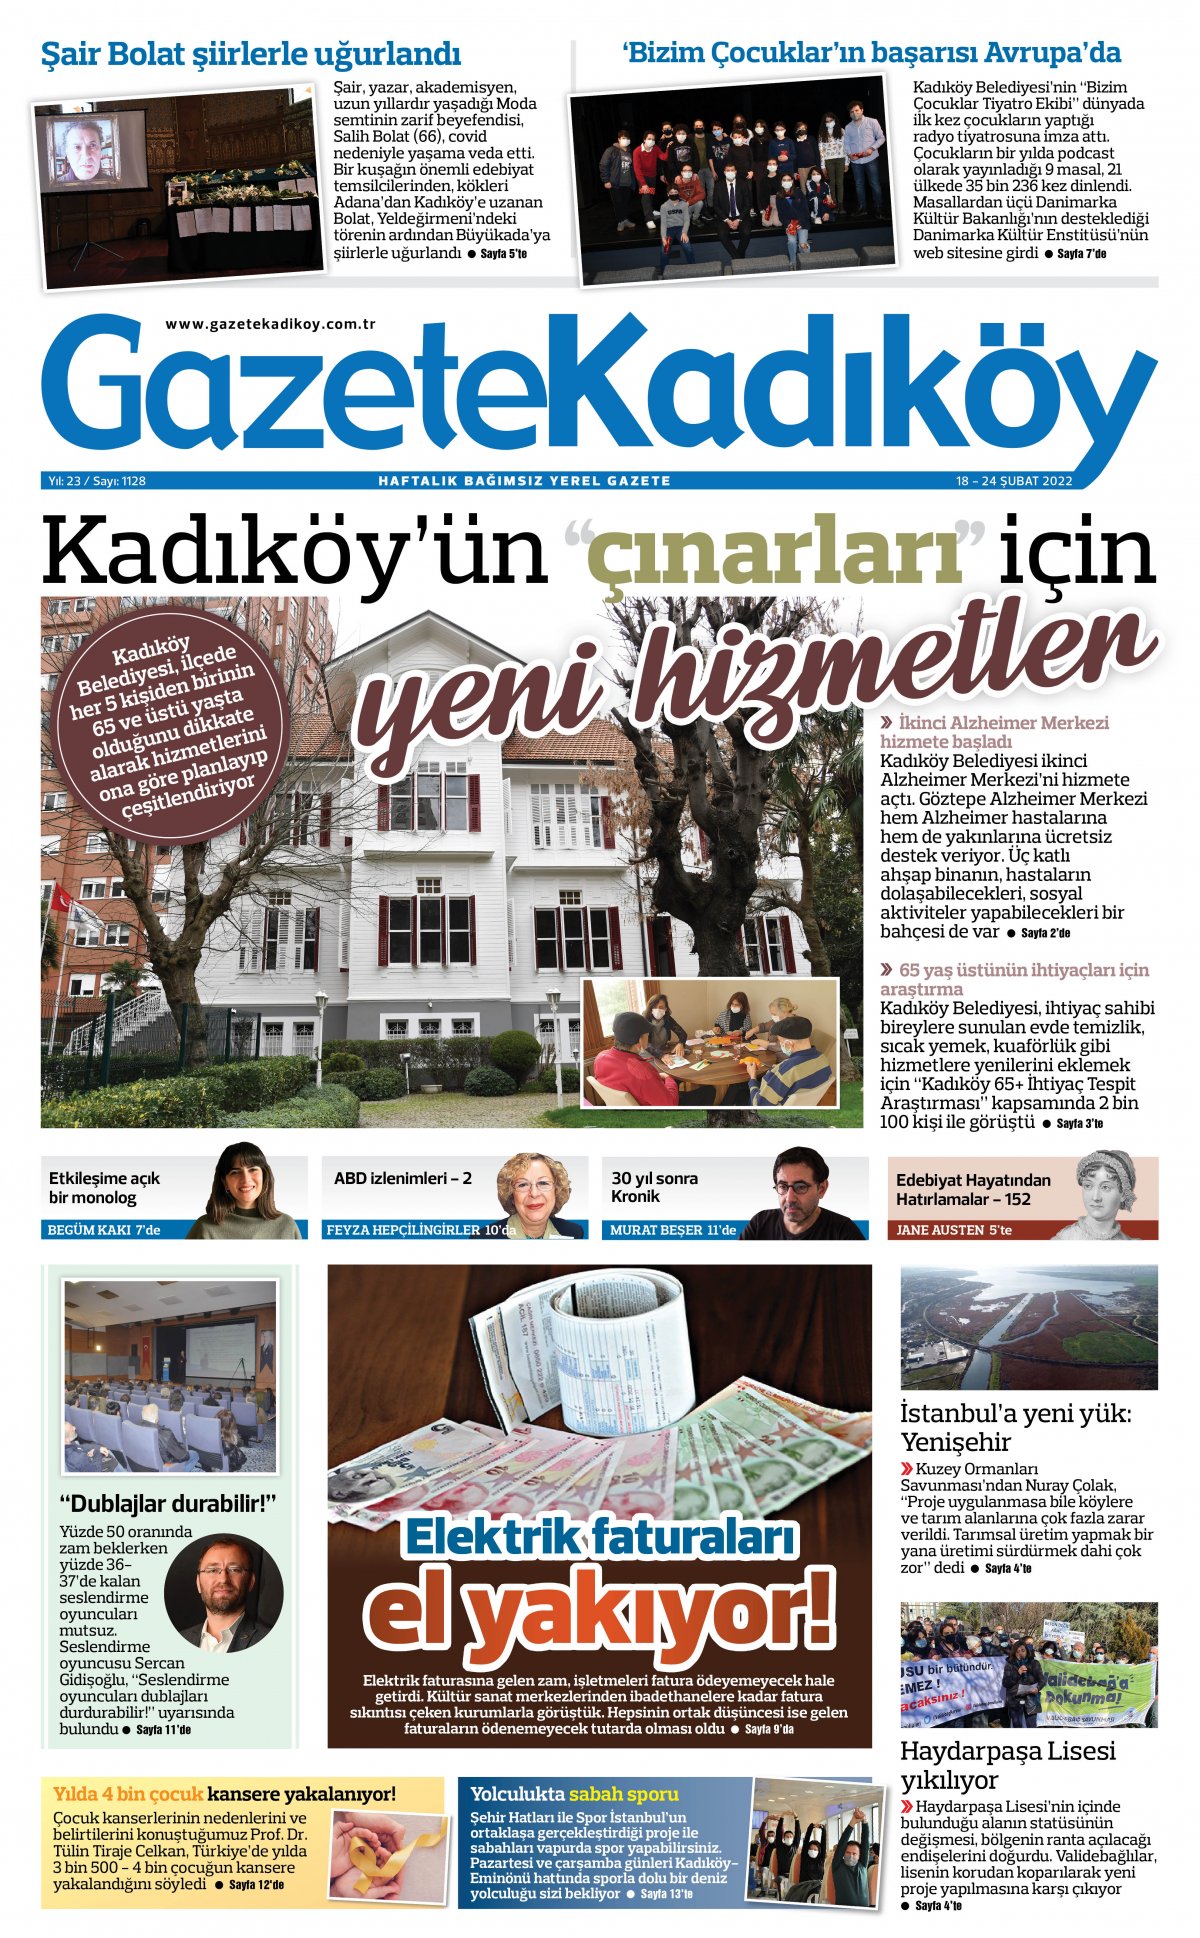 Gazete Kadıköy - 1128. Sayı